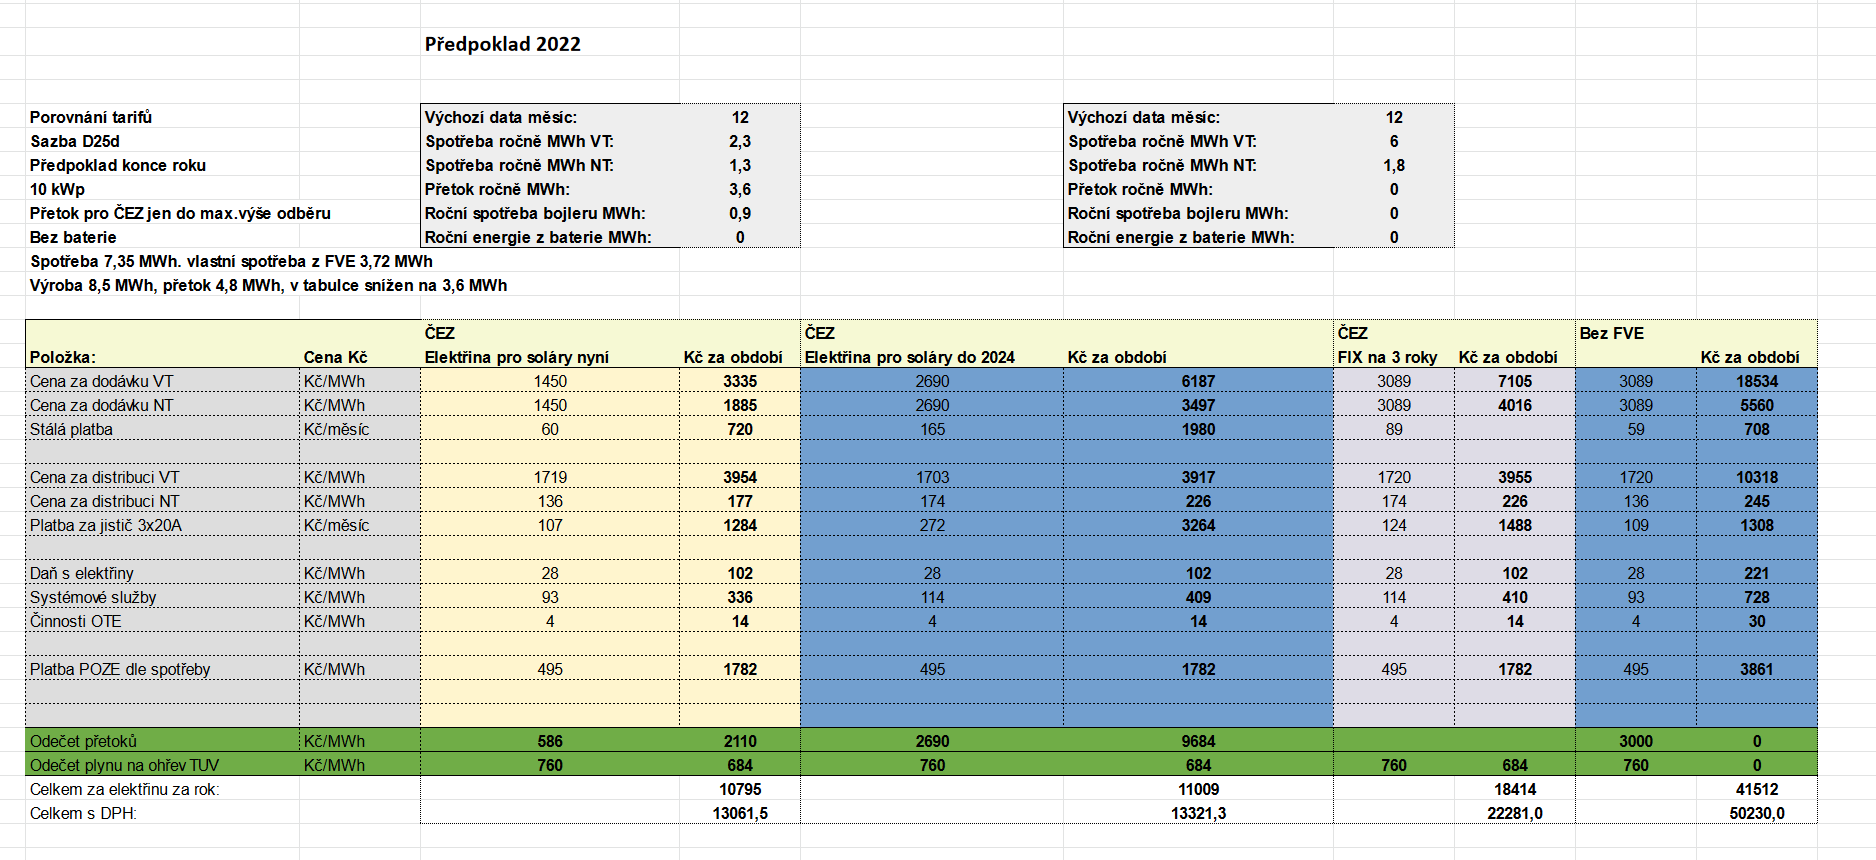 Screenshot 2022-01-15 at 16-20-18 Porovnání tarifů virtuální baterie od ČEZu a ostatních xlsx.png